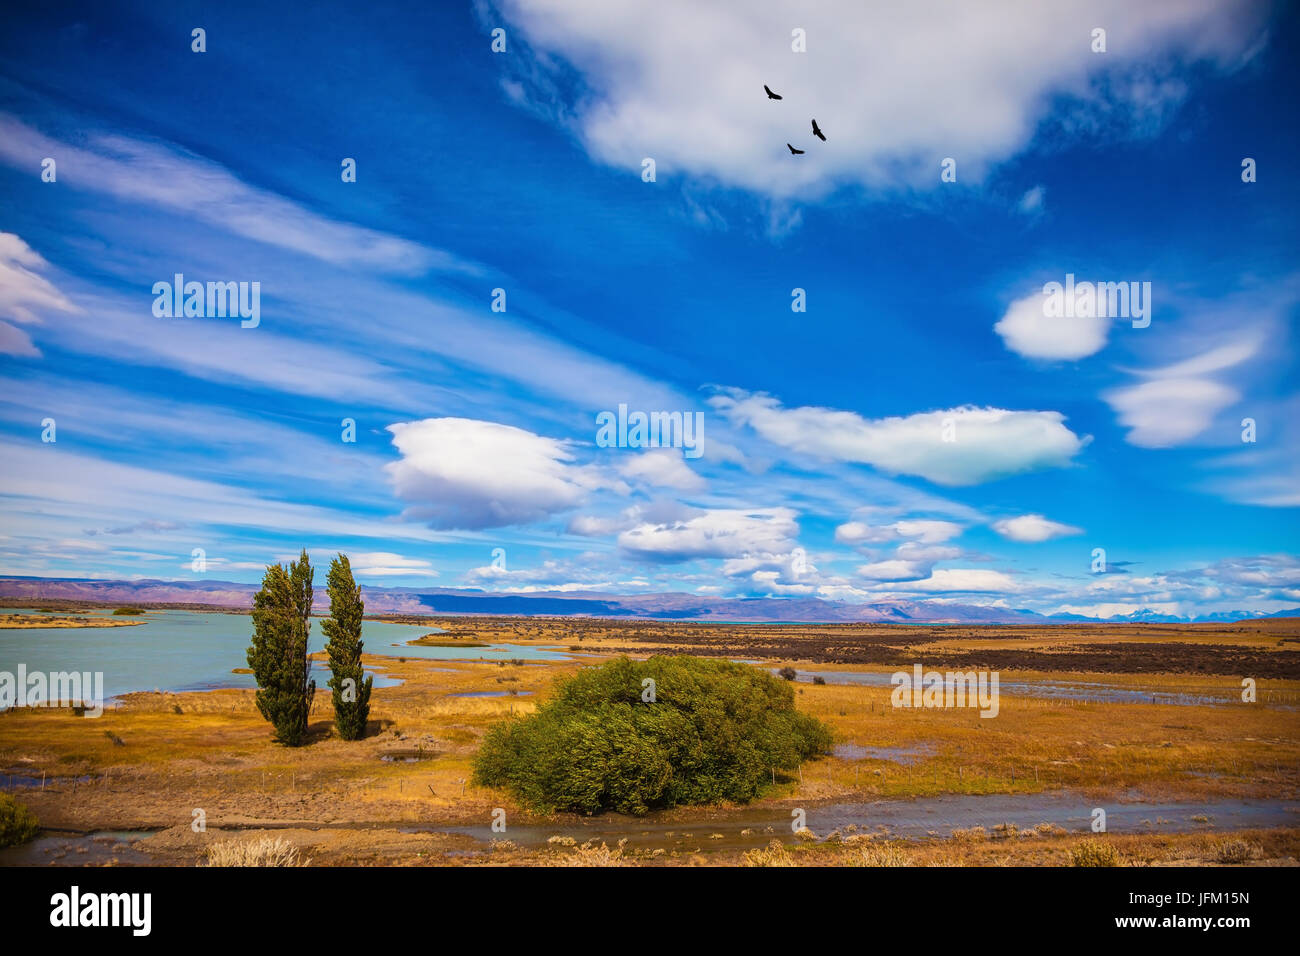 Patagonia argentina en febrero. Scorched plano amarillo desierto con lagos poco profundos Foto de stock